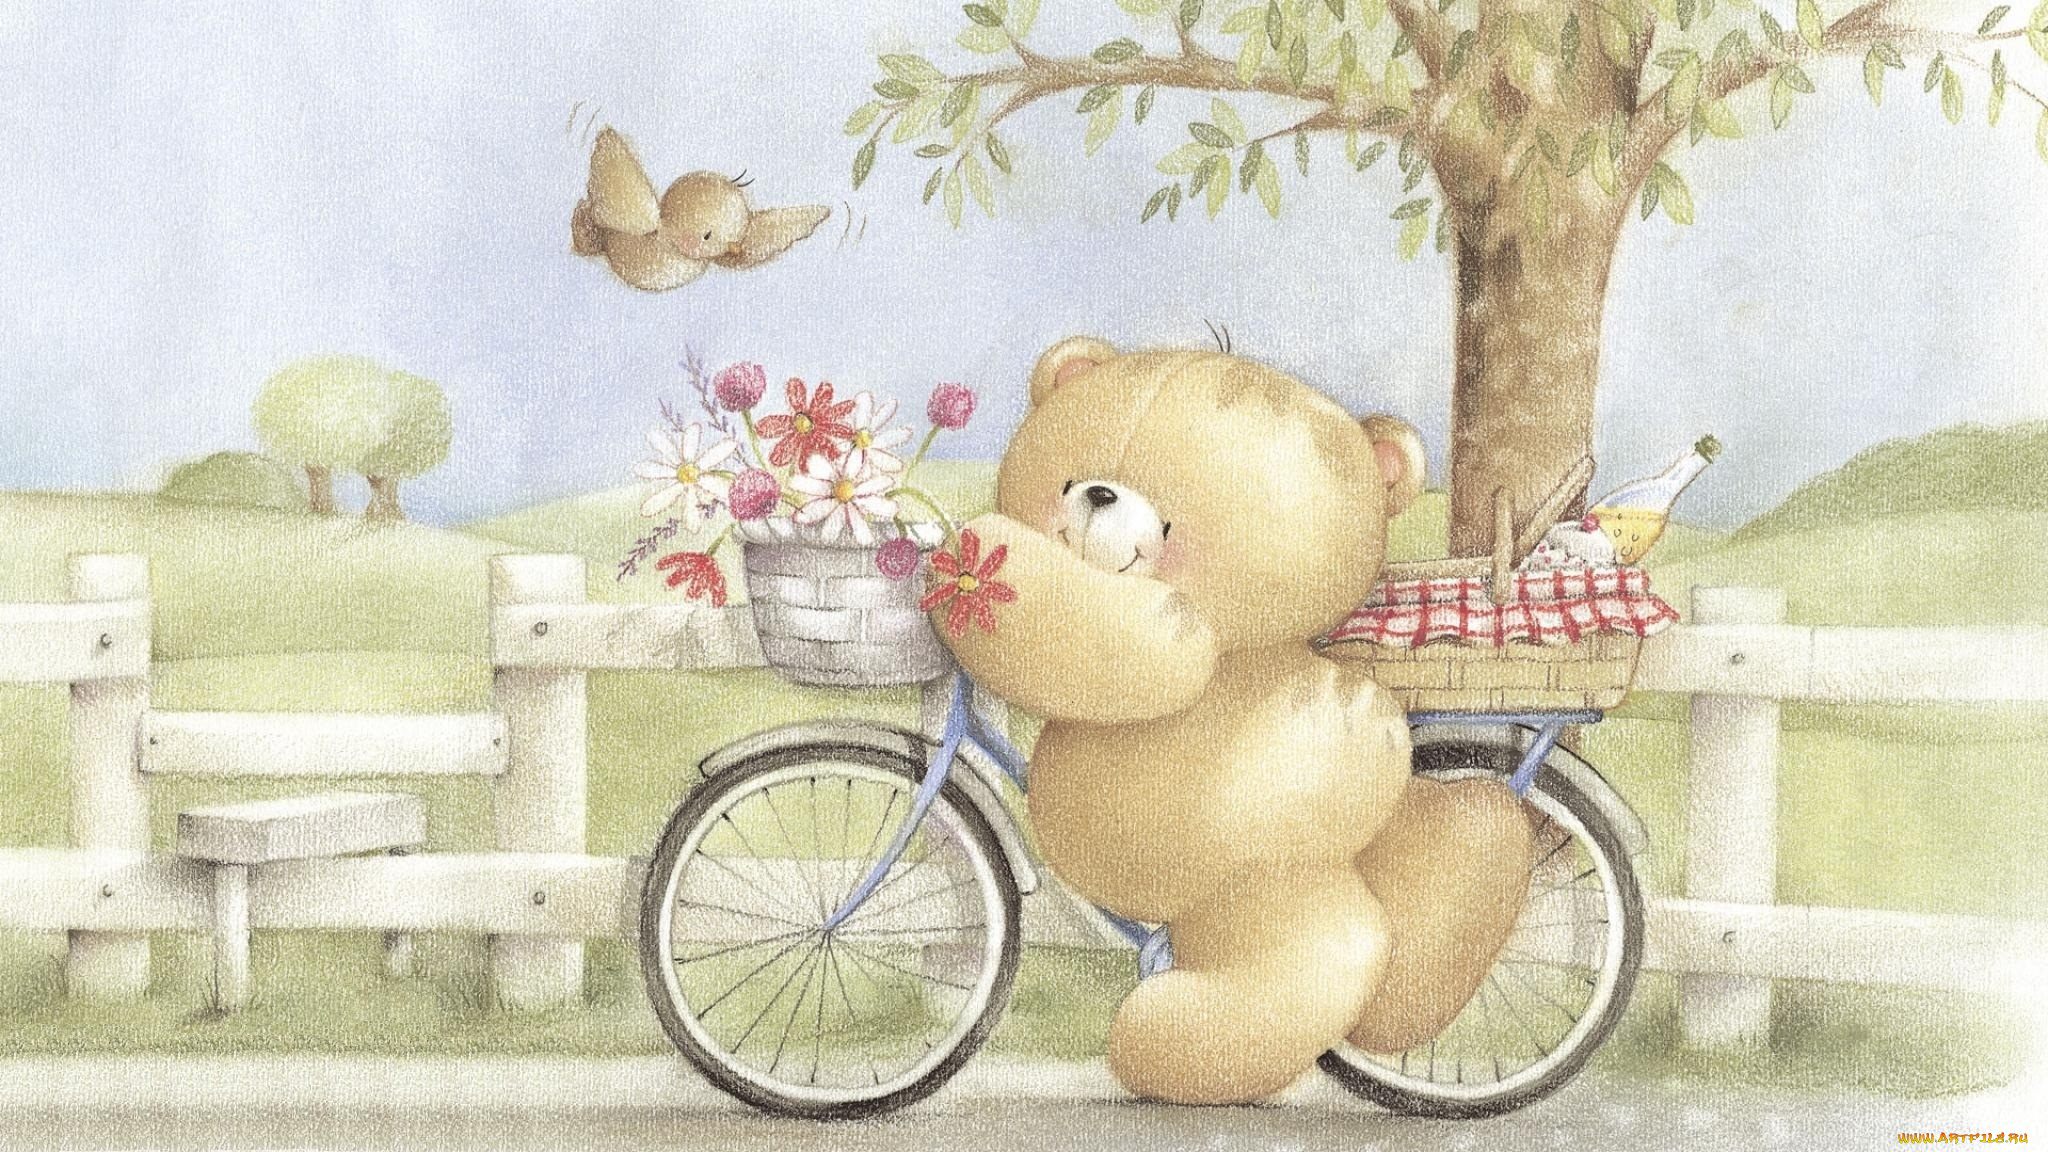 рисованное, мишки, тэдди, цветы, велосипед, птичка, медвежонок